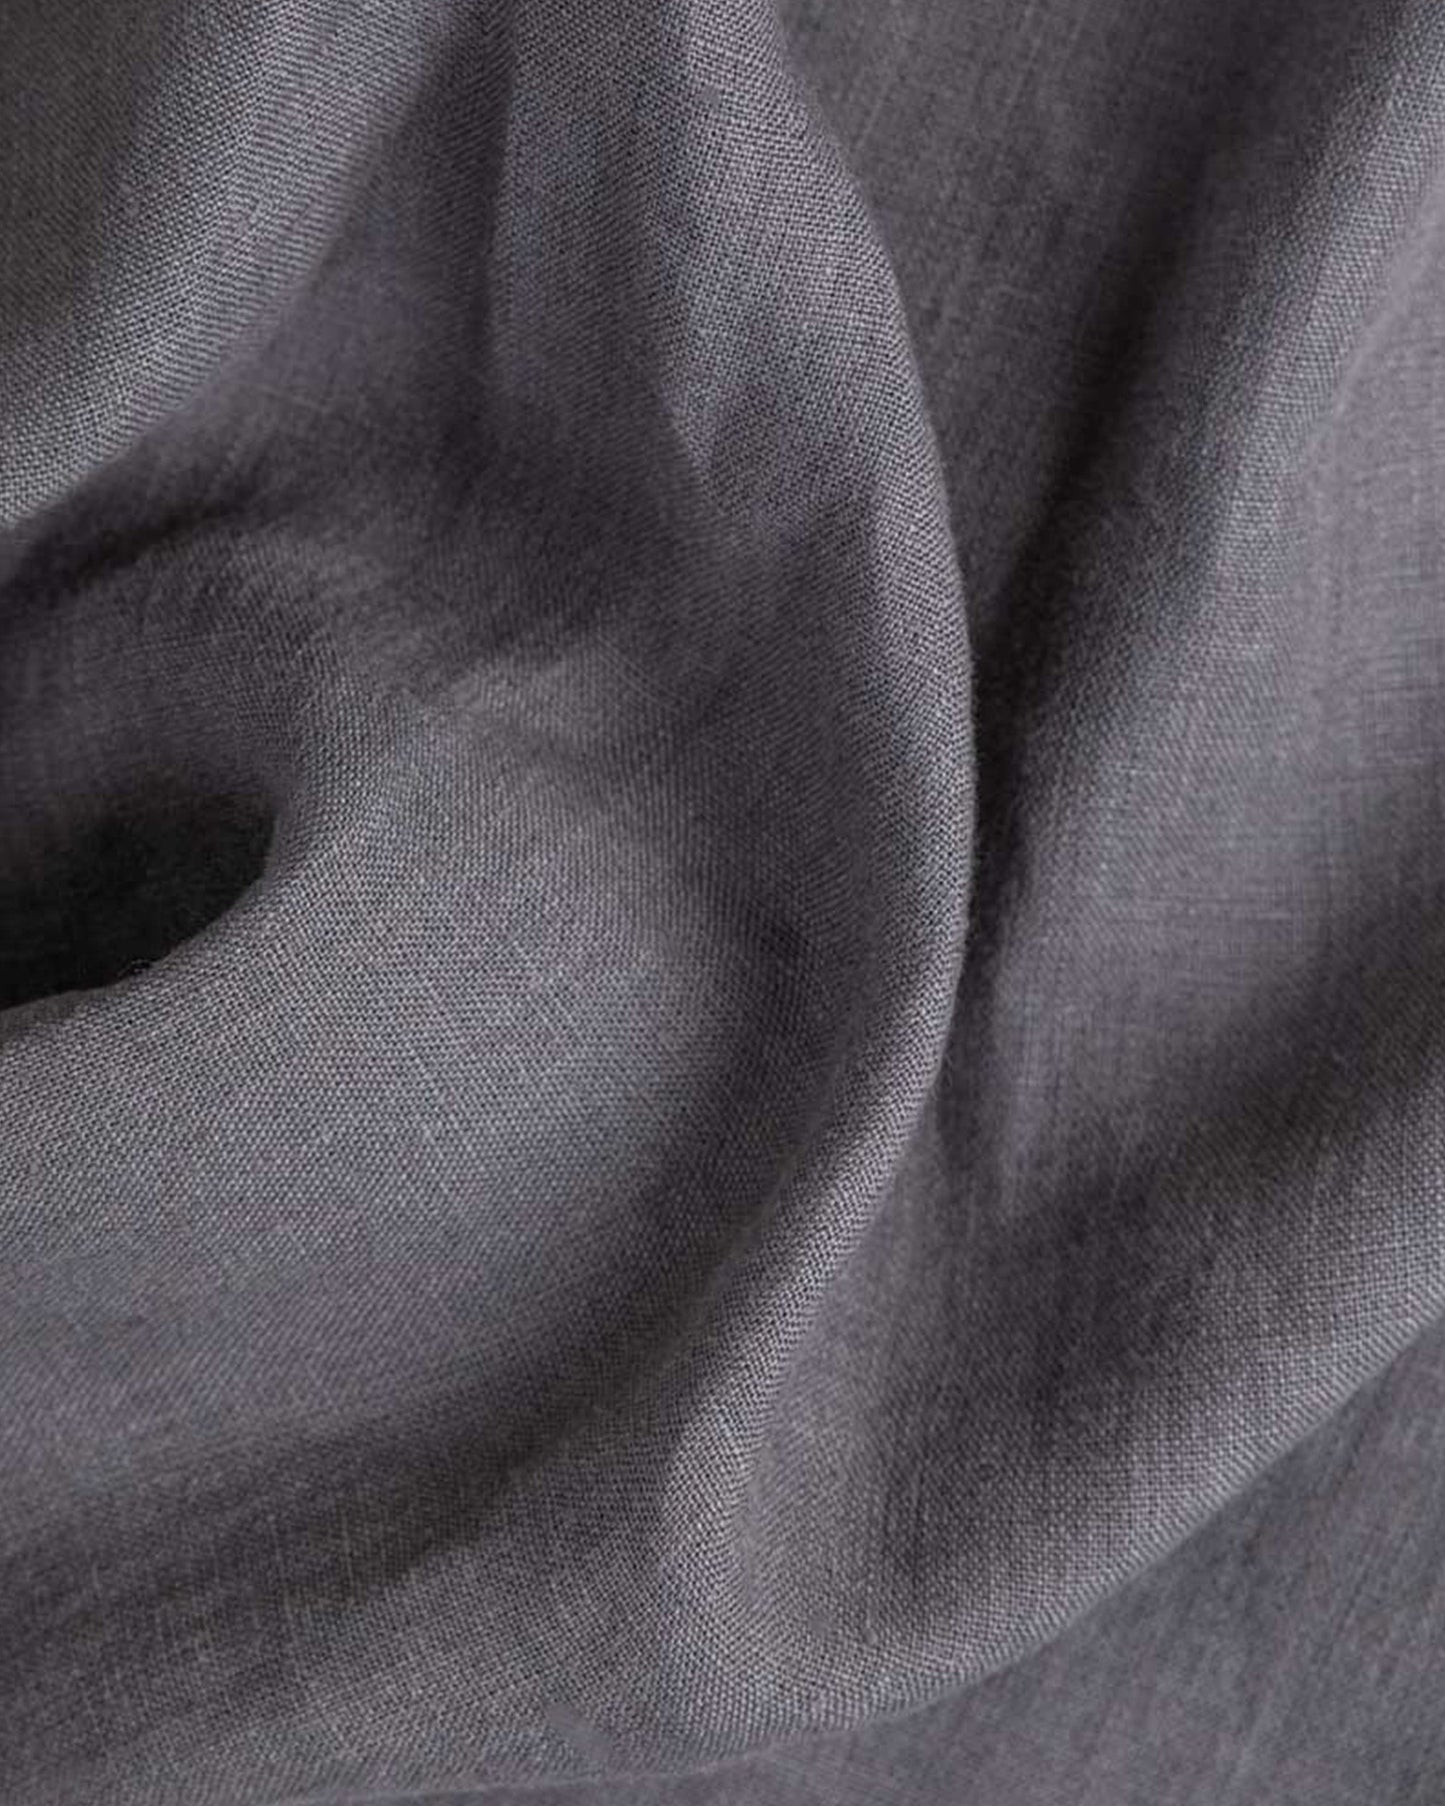 Charcoal gray linen flat sheet - MagicLinen